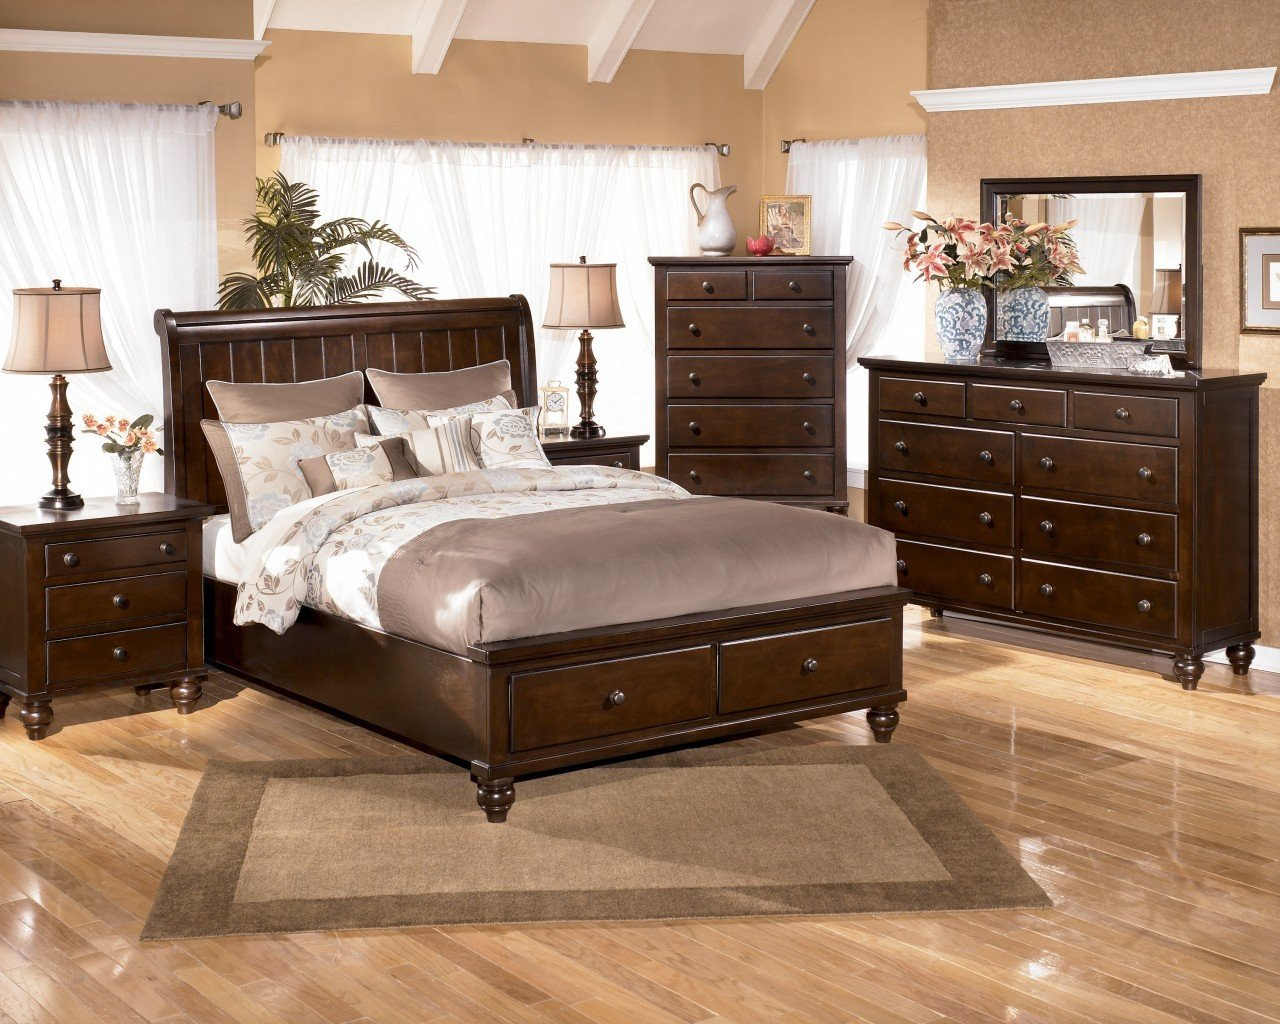 Modern Bedroom Sets Under 1000
 King Bedroom Furniture Sets Under 1000 Home Furniture Design